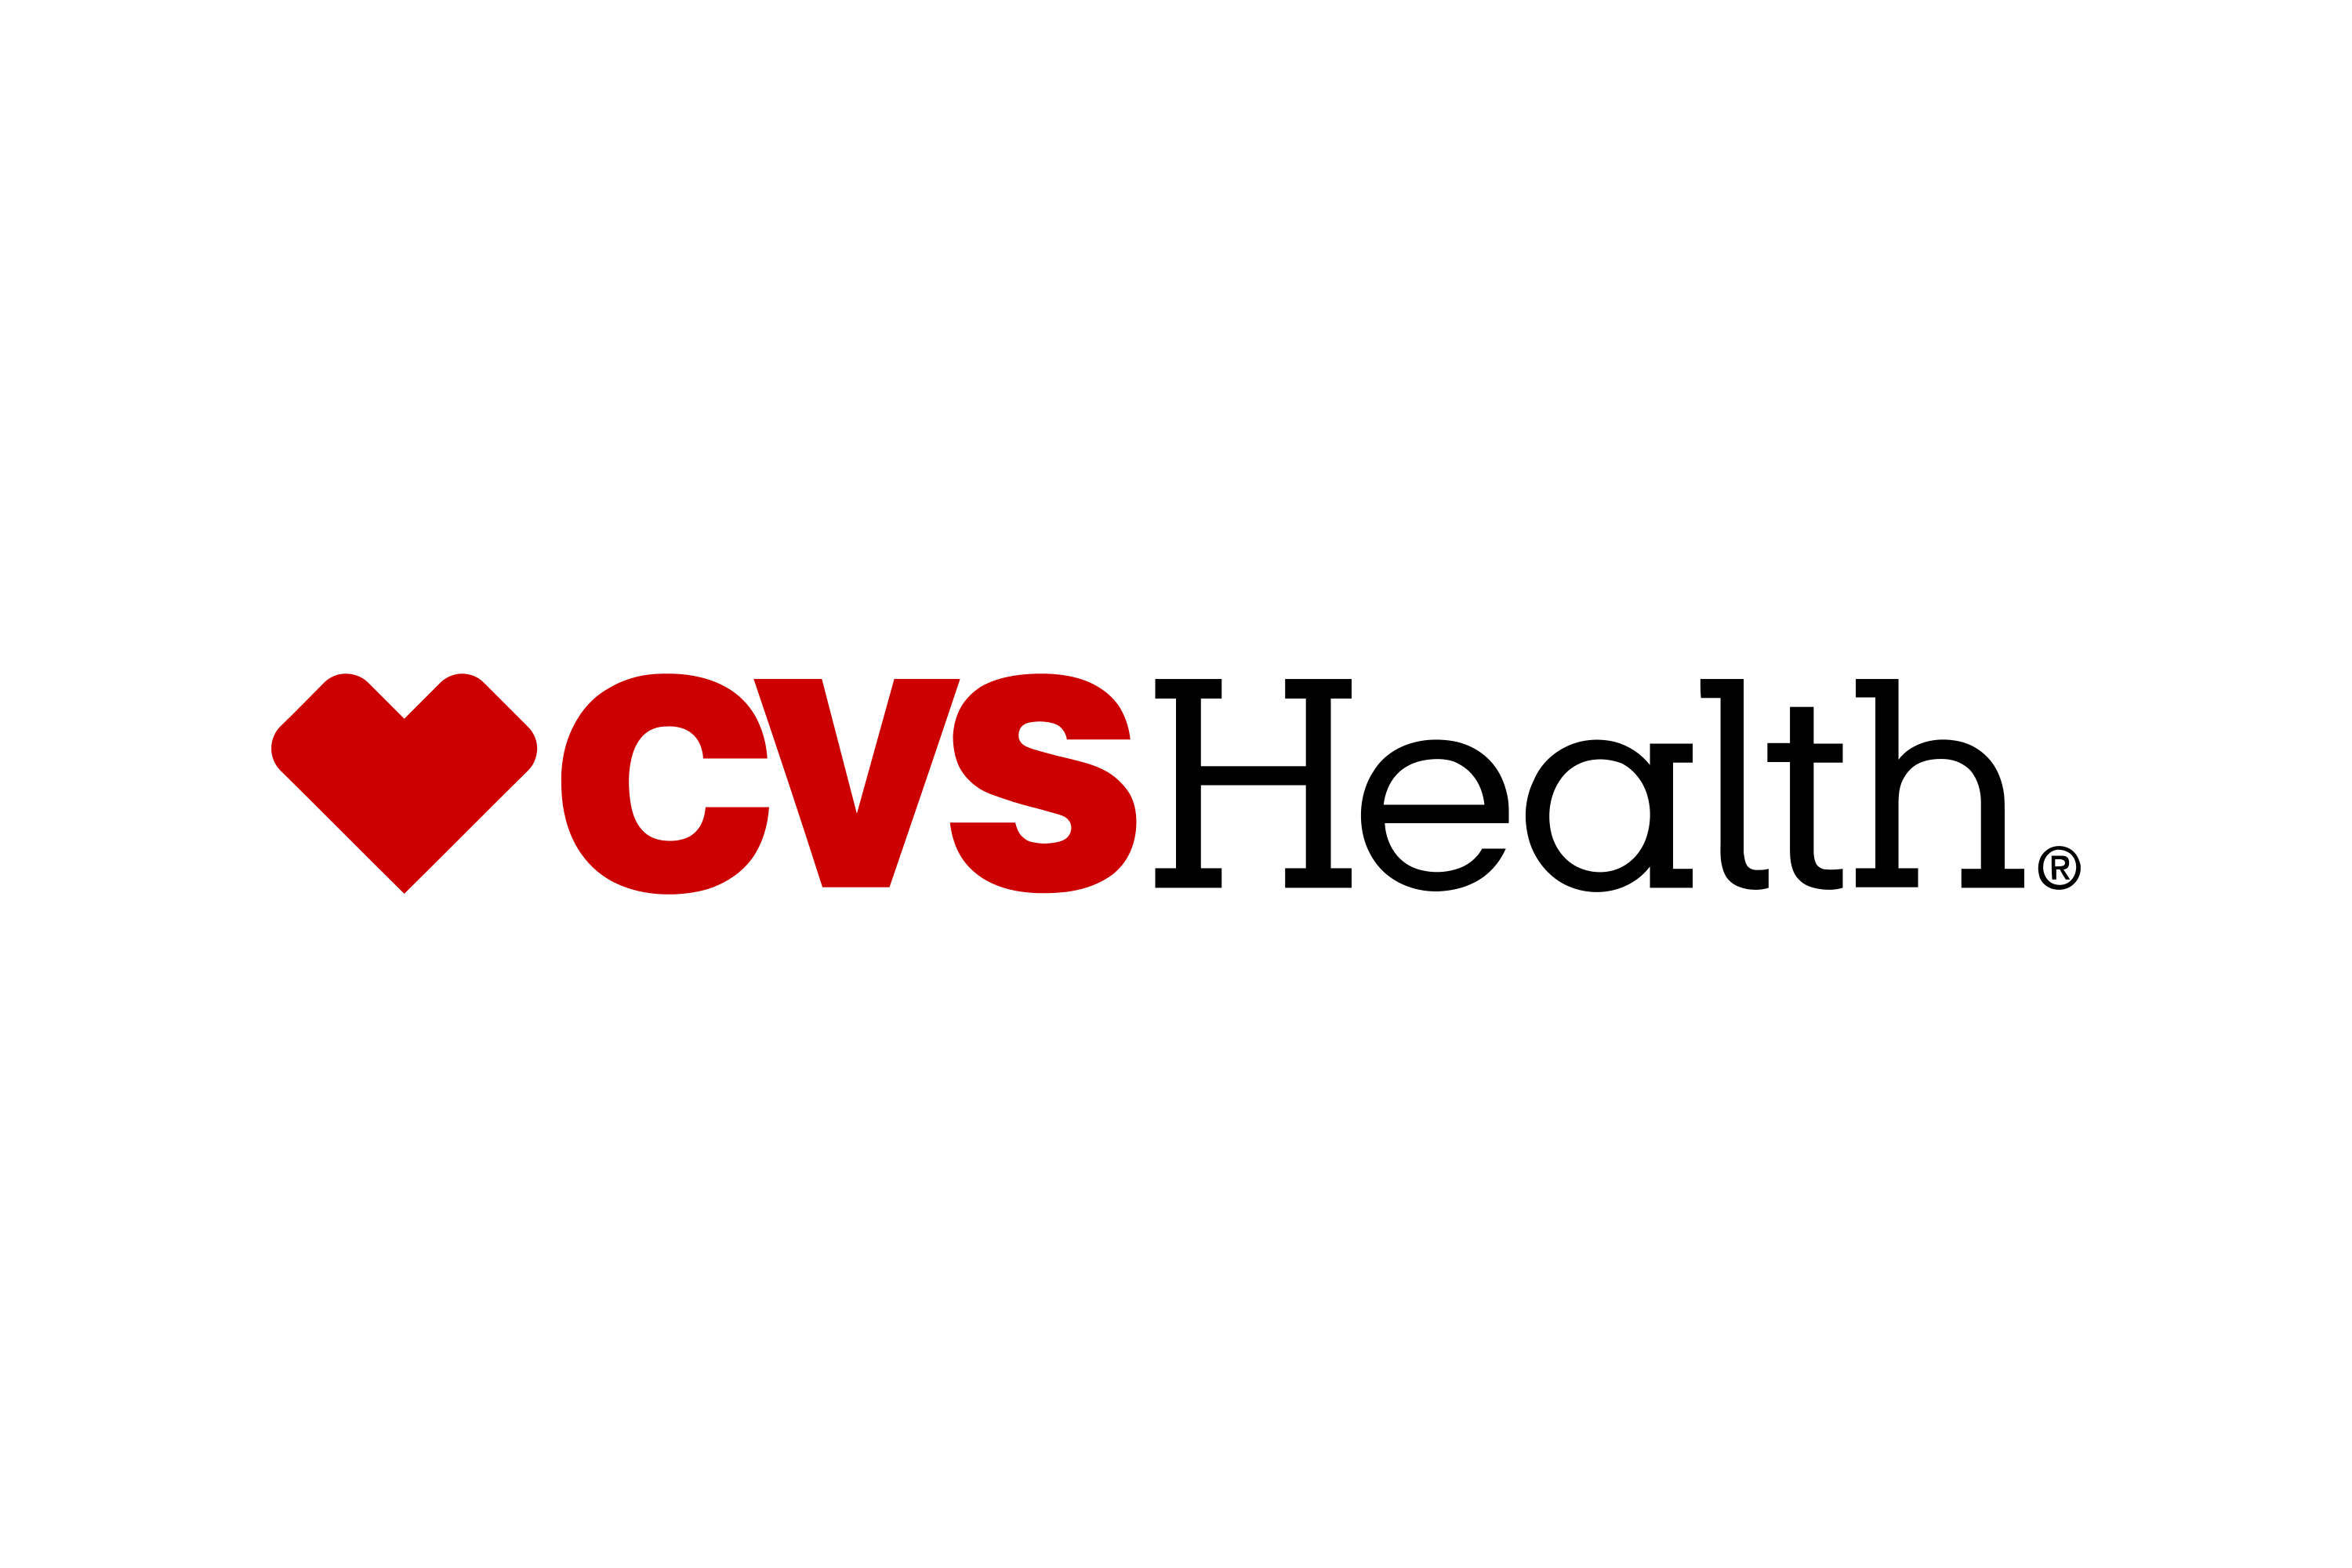 Download CVS Health Logo in SVG Vector or PNG File Format - Logo.wine